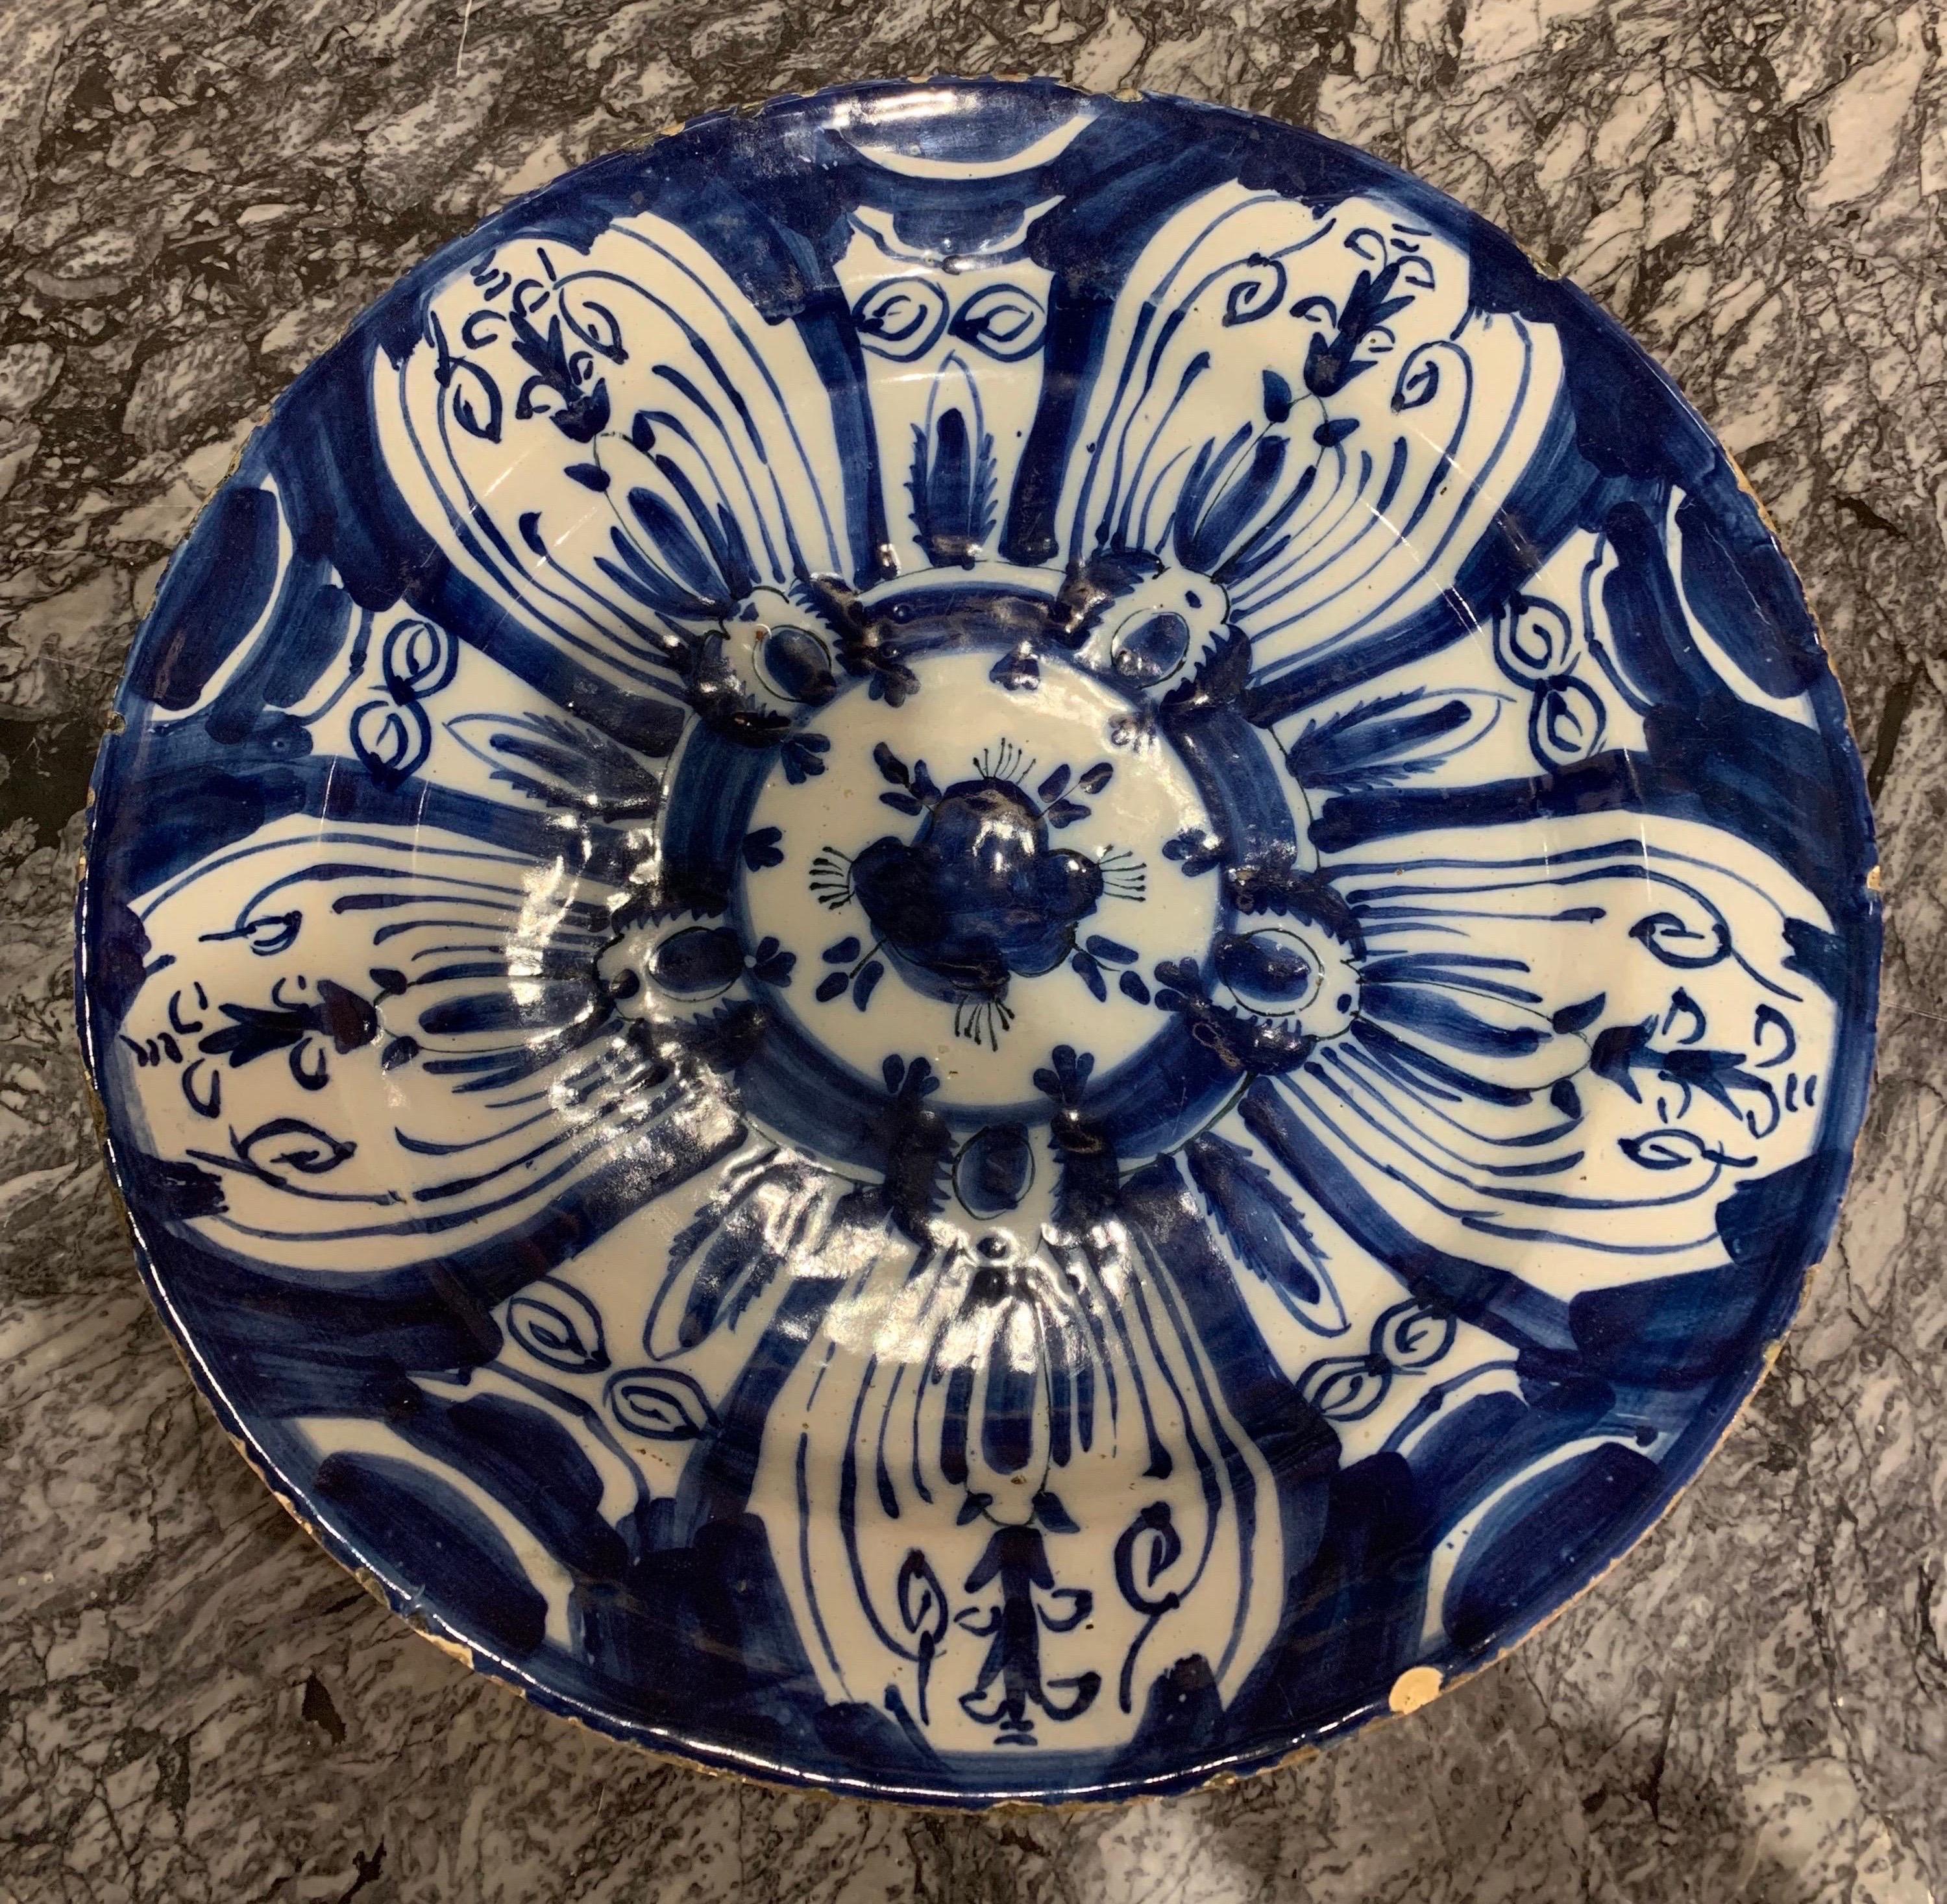 18th century hand painted Dutch delft platter- 14” diameter. Rich dark blue hand painted flower pattern.